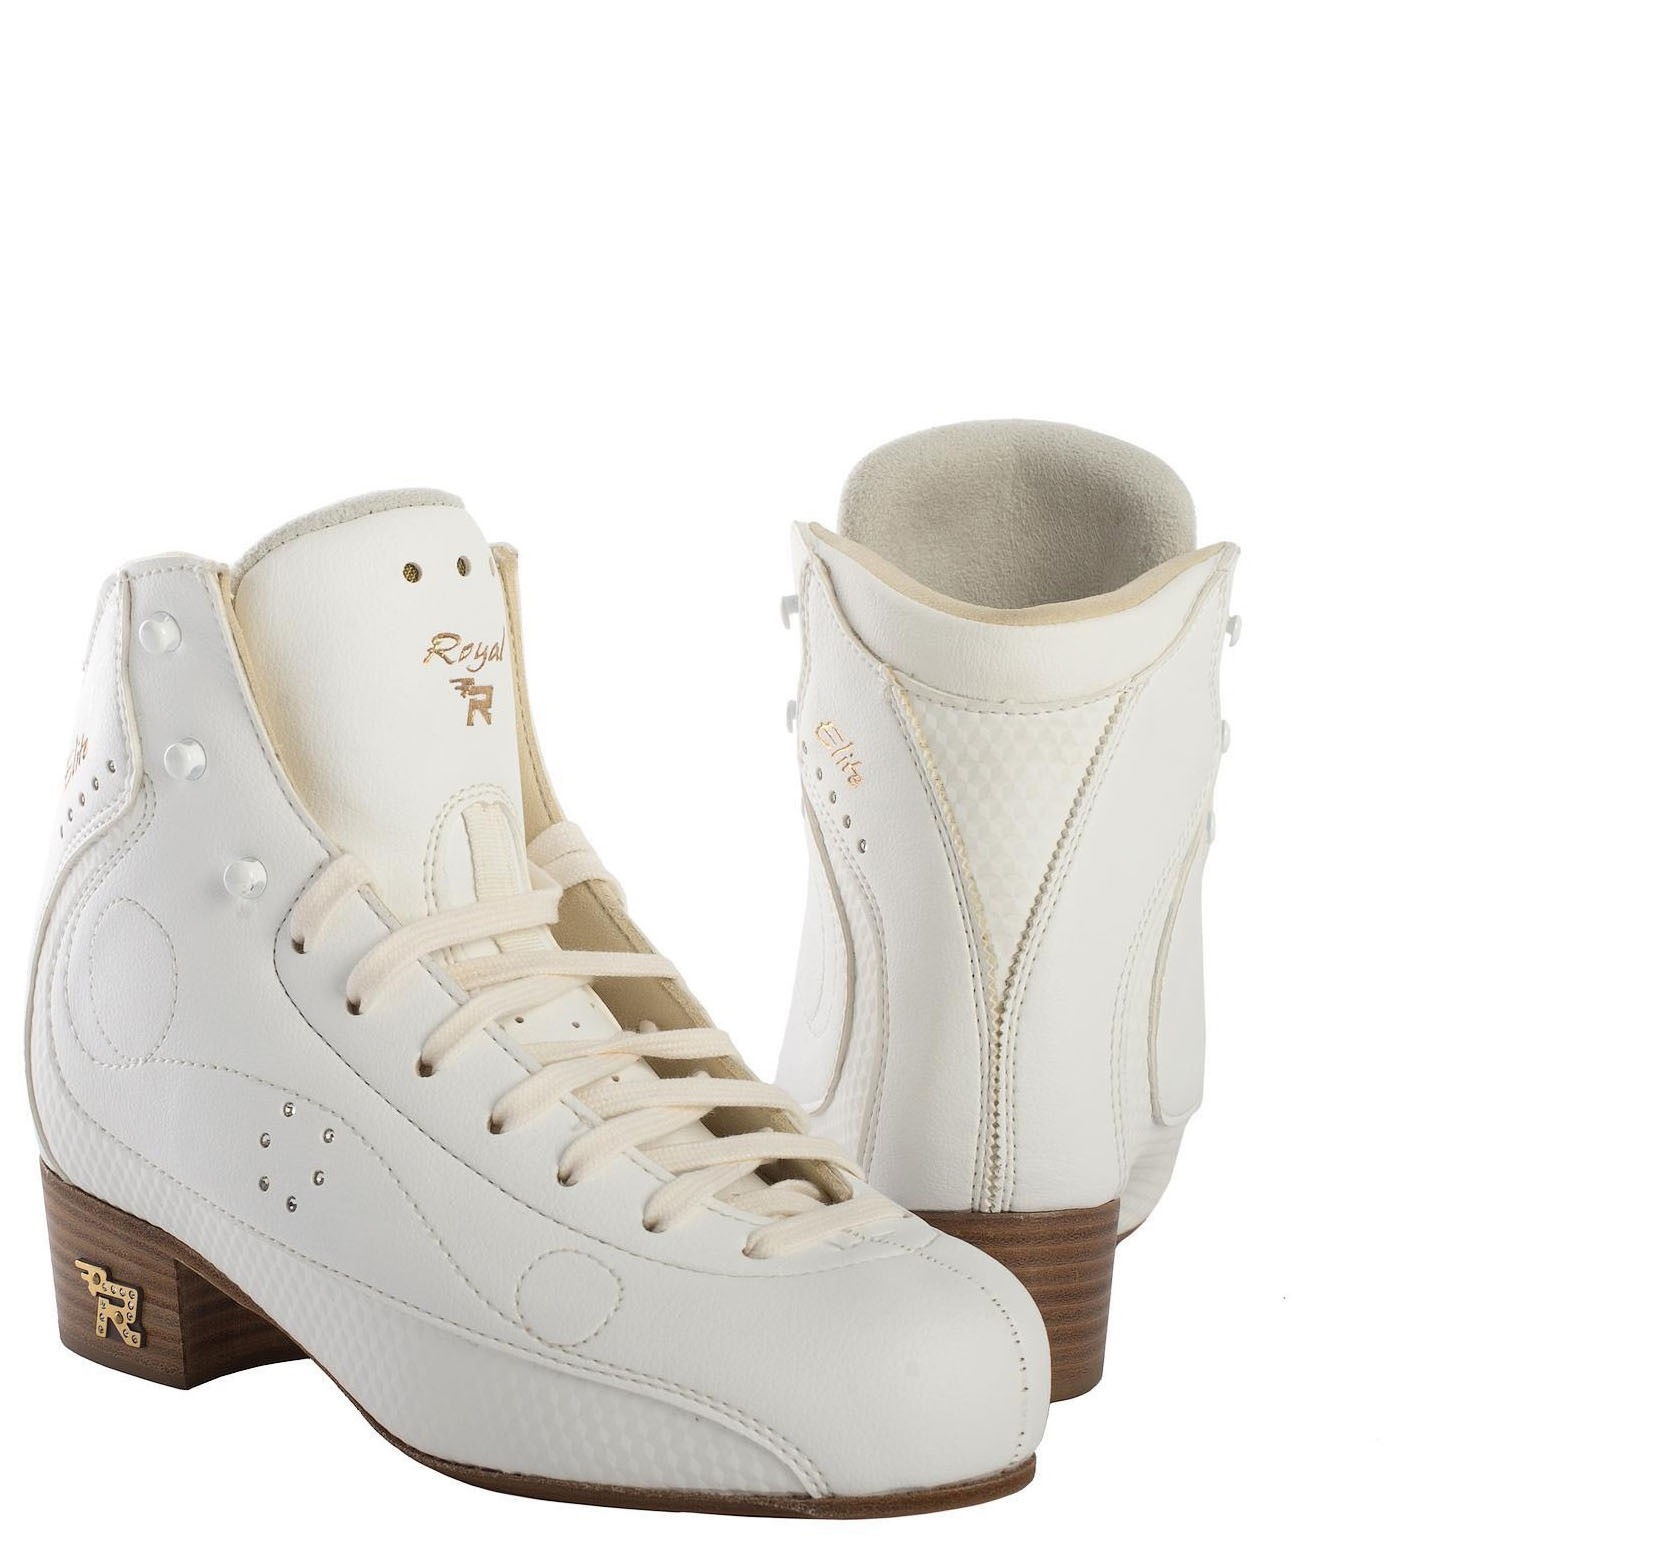 Фигурные ботинки Risport Royal Elite (Белые) h